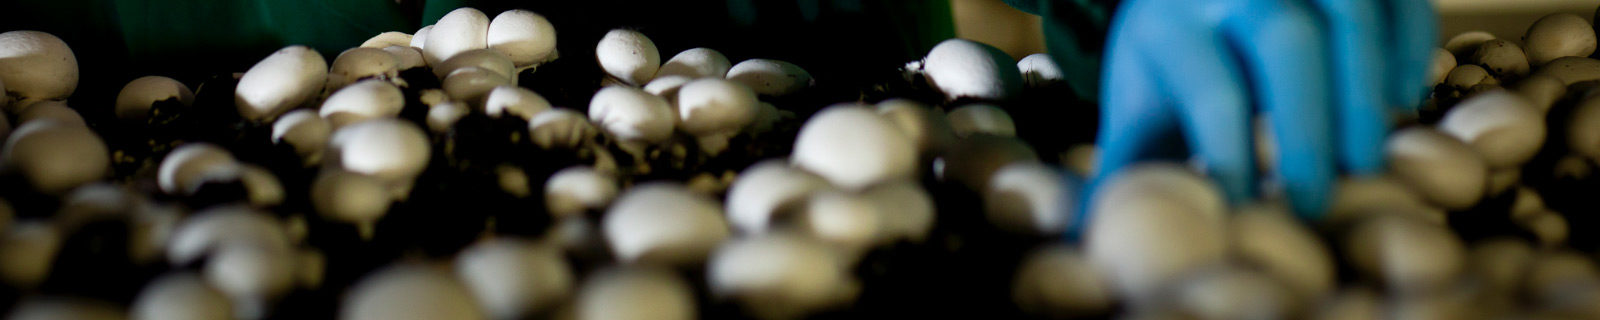 Mushroom Harvester Job Application